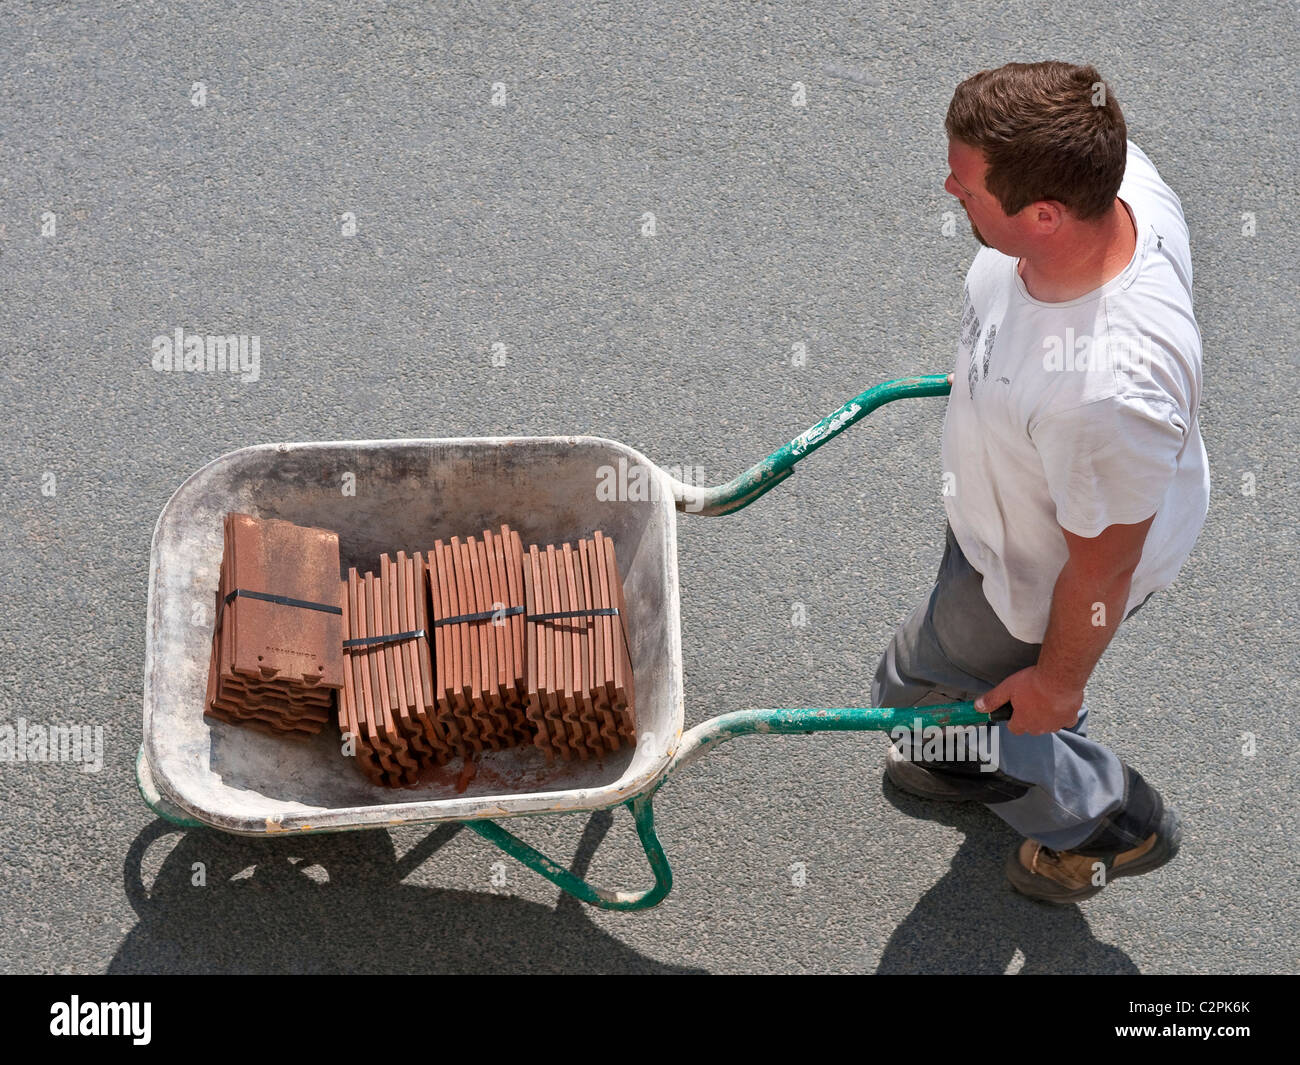 Balades le long de la rue Workman brouette transportant de nouvelles tuiles de toiture - France. Banque D'Images